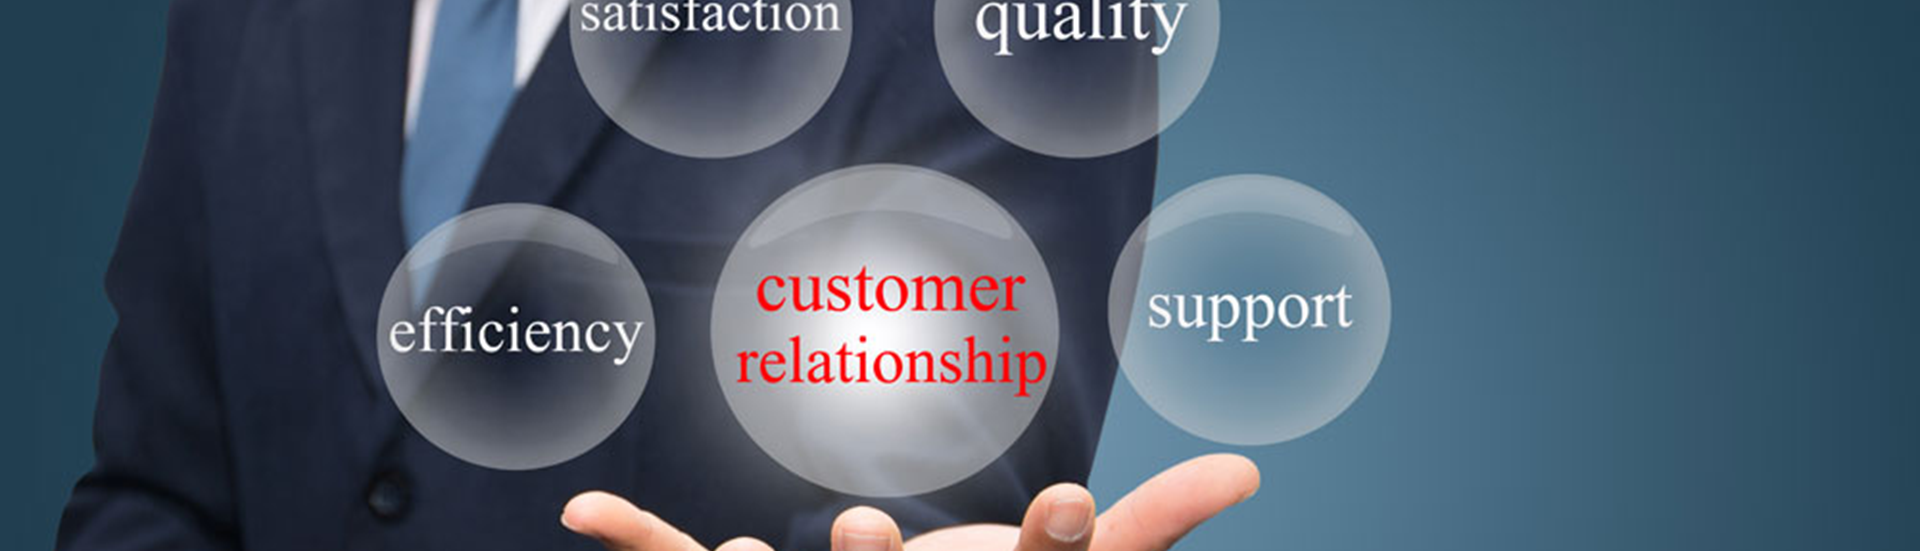 Topbillede med en sløret person i baggrund af bobler med tekst: Satisfaction, Quality, Efficiency, Custom relation og Support